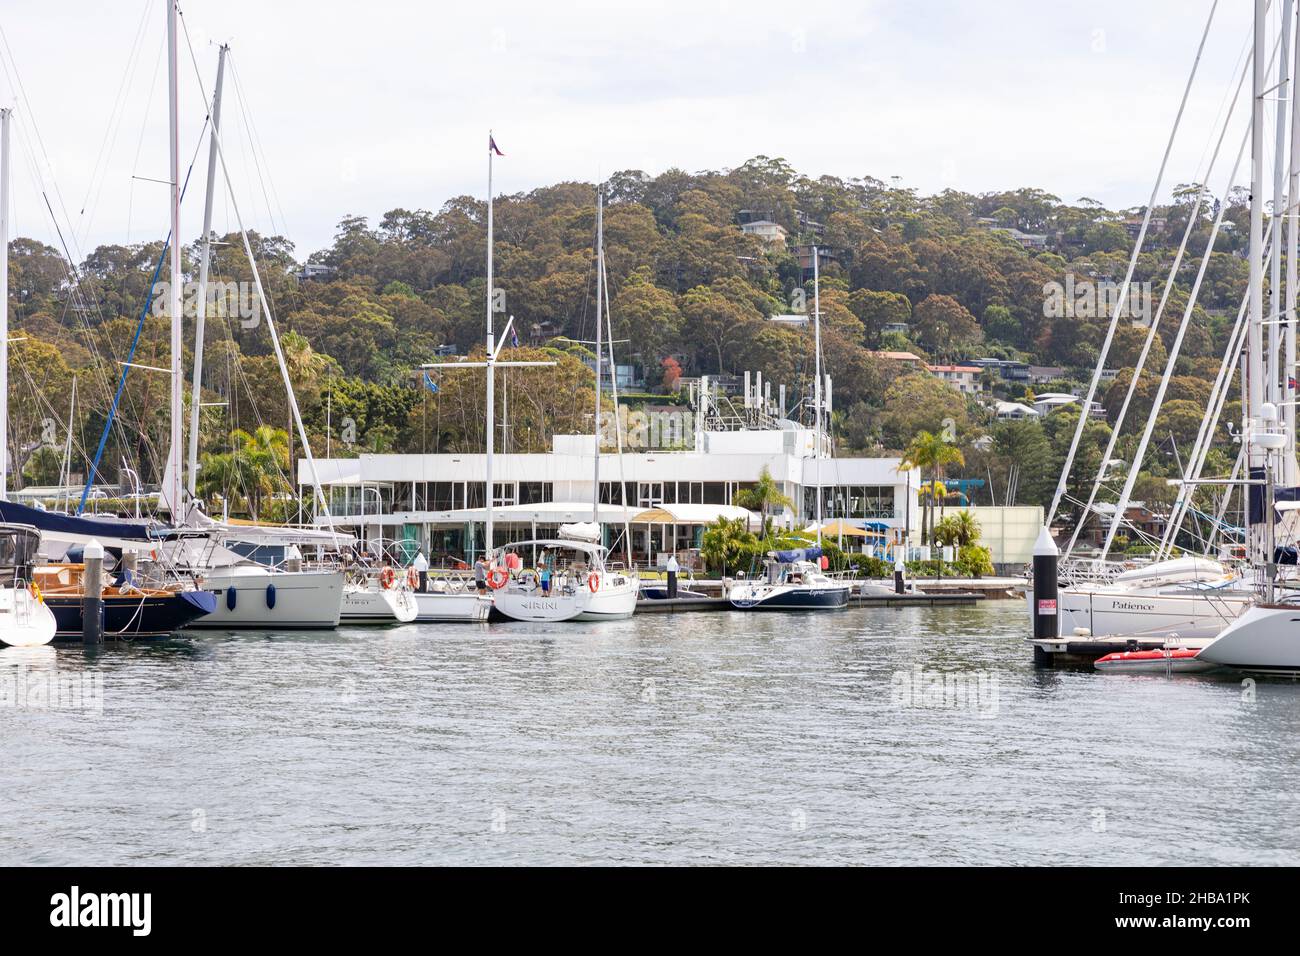 Royal Prince Alfred Yacht Club visto dall'acqua su Pittwater, con barche e yacht nel porto turistico, Sydney, Australia Foto Stock